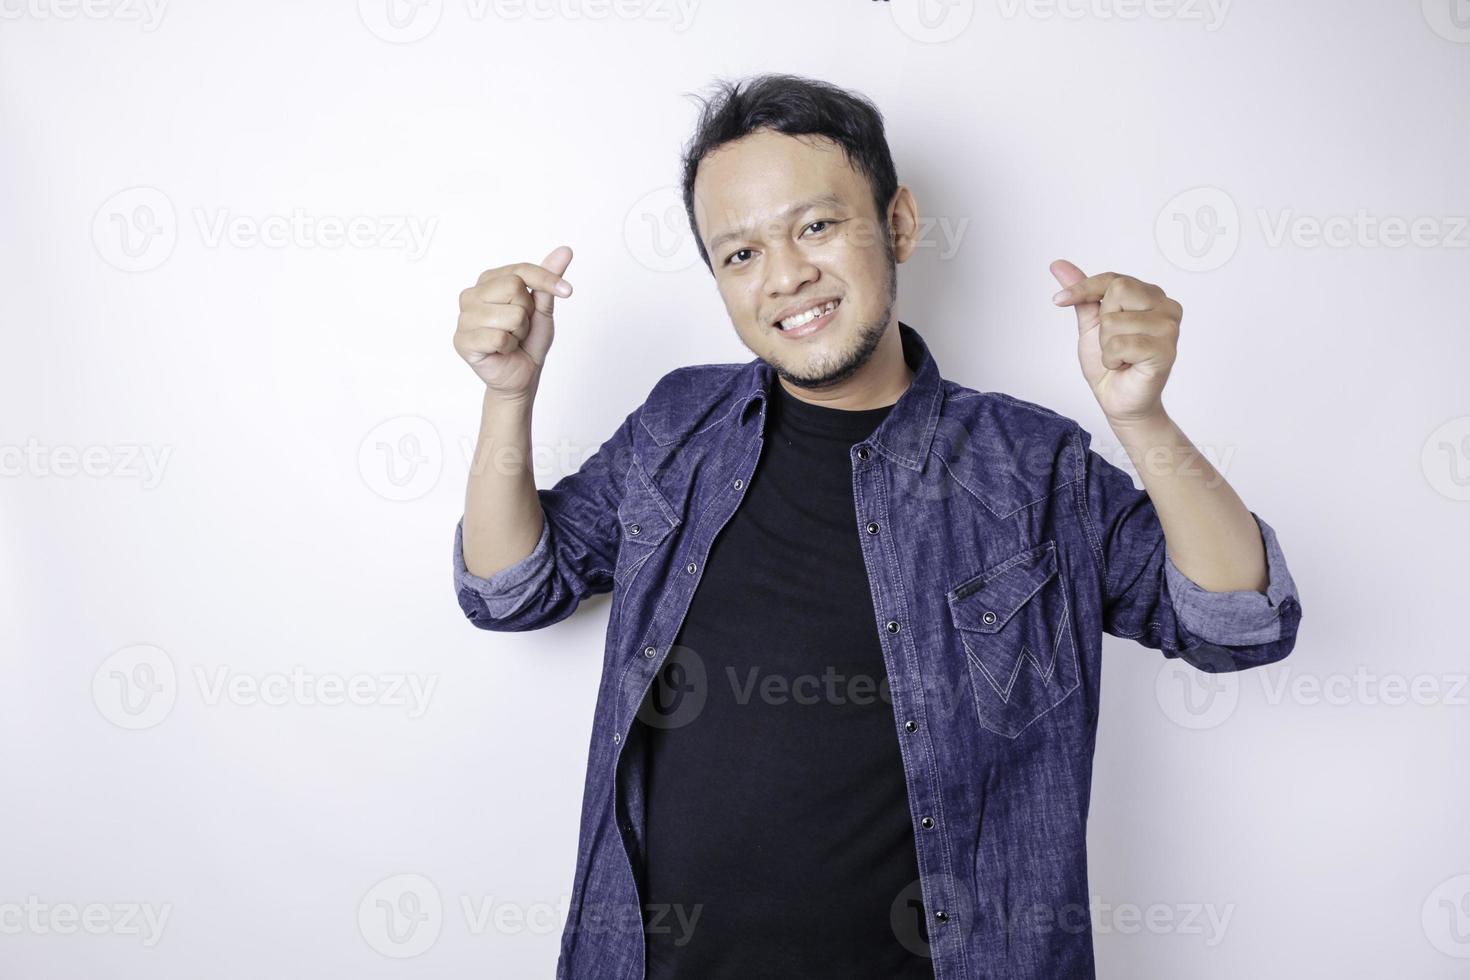 un jeune homme asiatique séduisant portant une chemise bleu marine se sent heureux et un geste de coeur aux formes romantiques exprime des sentiments tendres photo